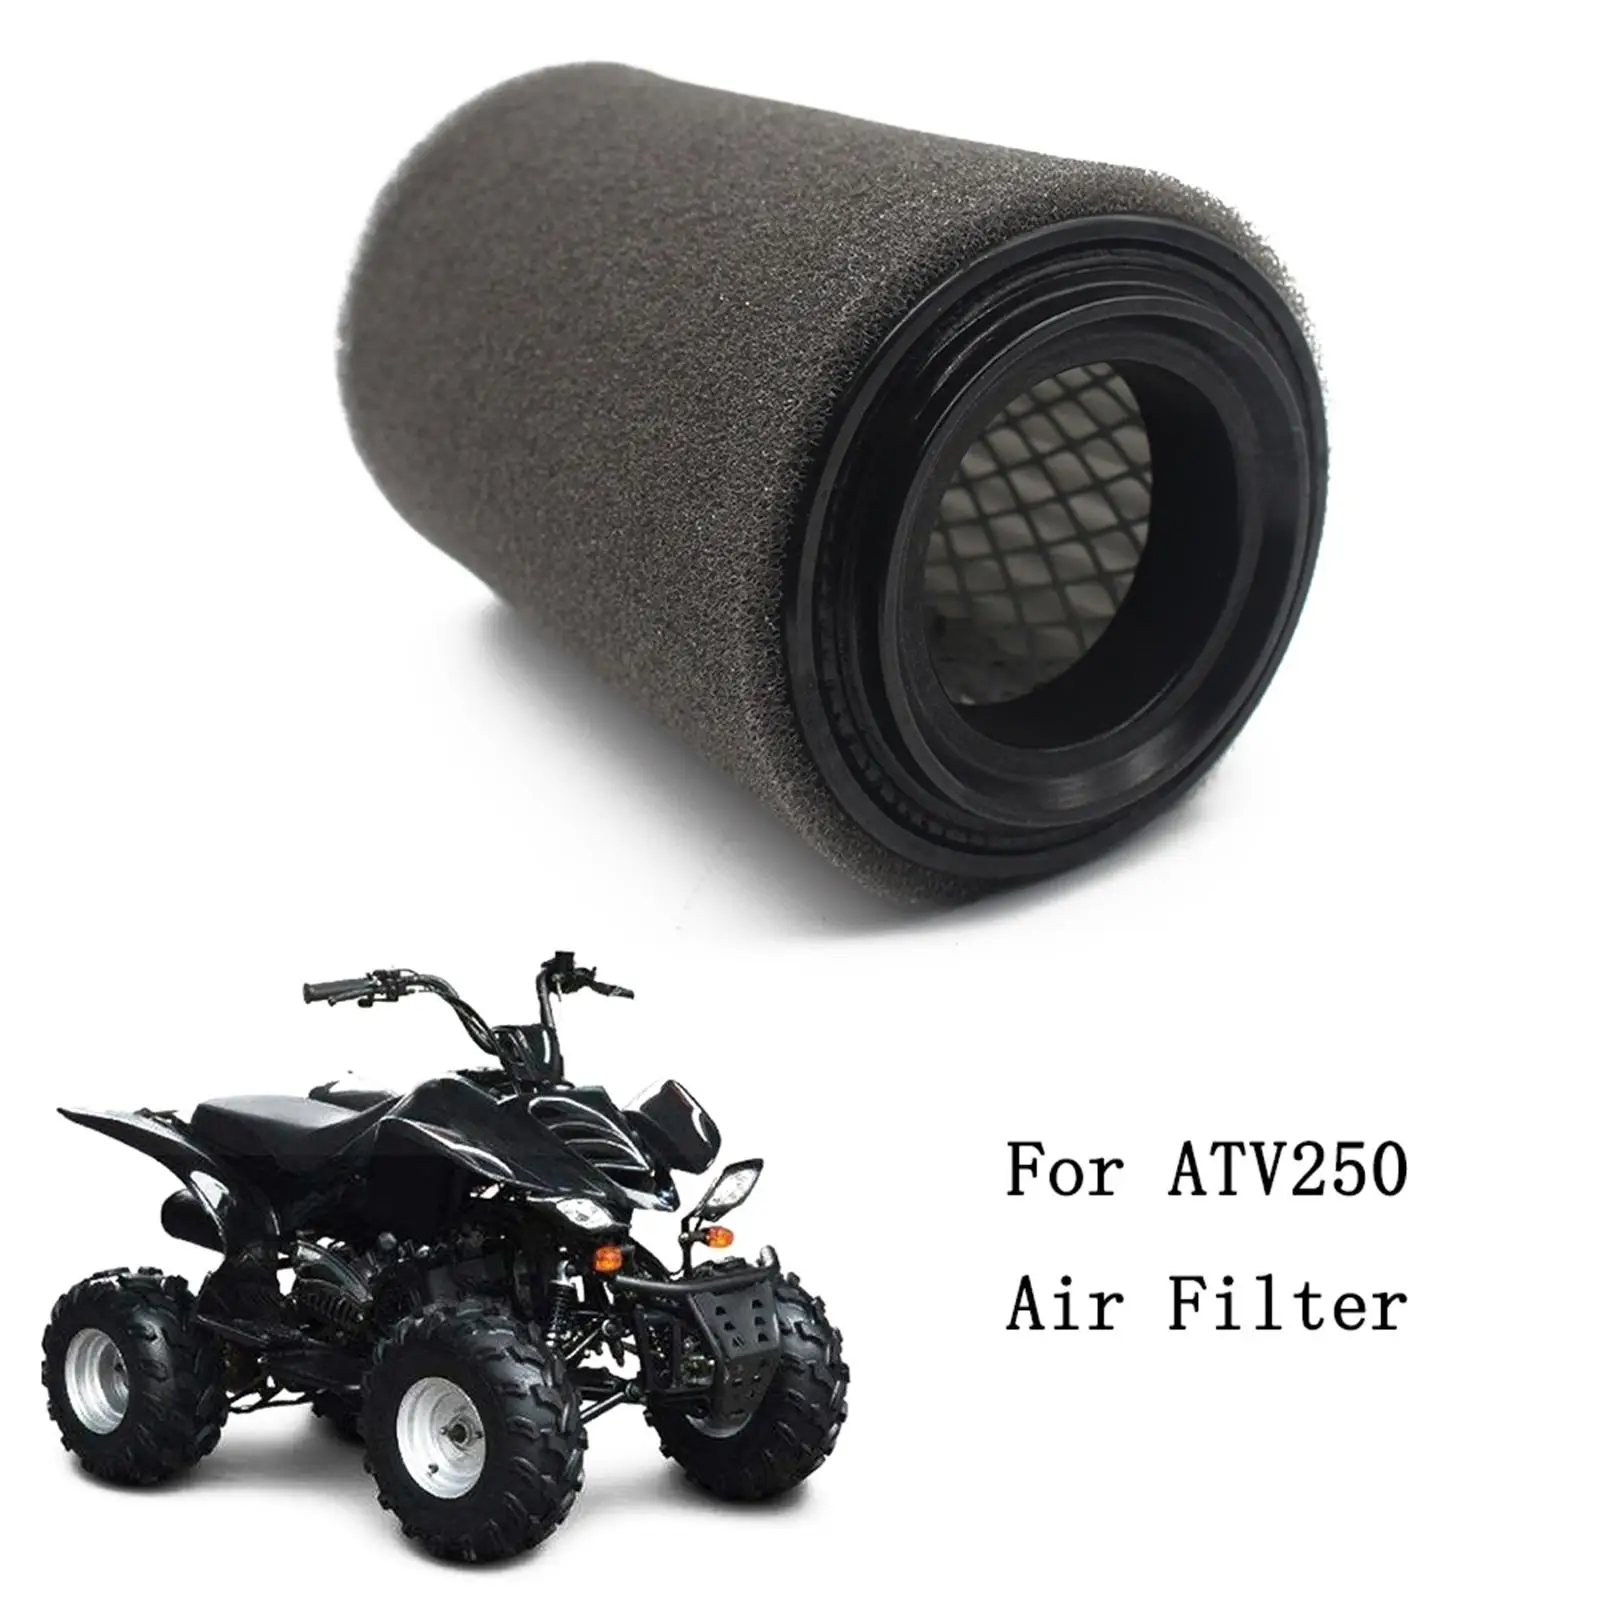 Hava filtresi gövdesi değiştirme için yedek parça Fit Shineray 250cc Xy 250 Stxe Premium profesyonel yüksek performanslı